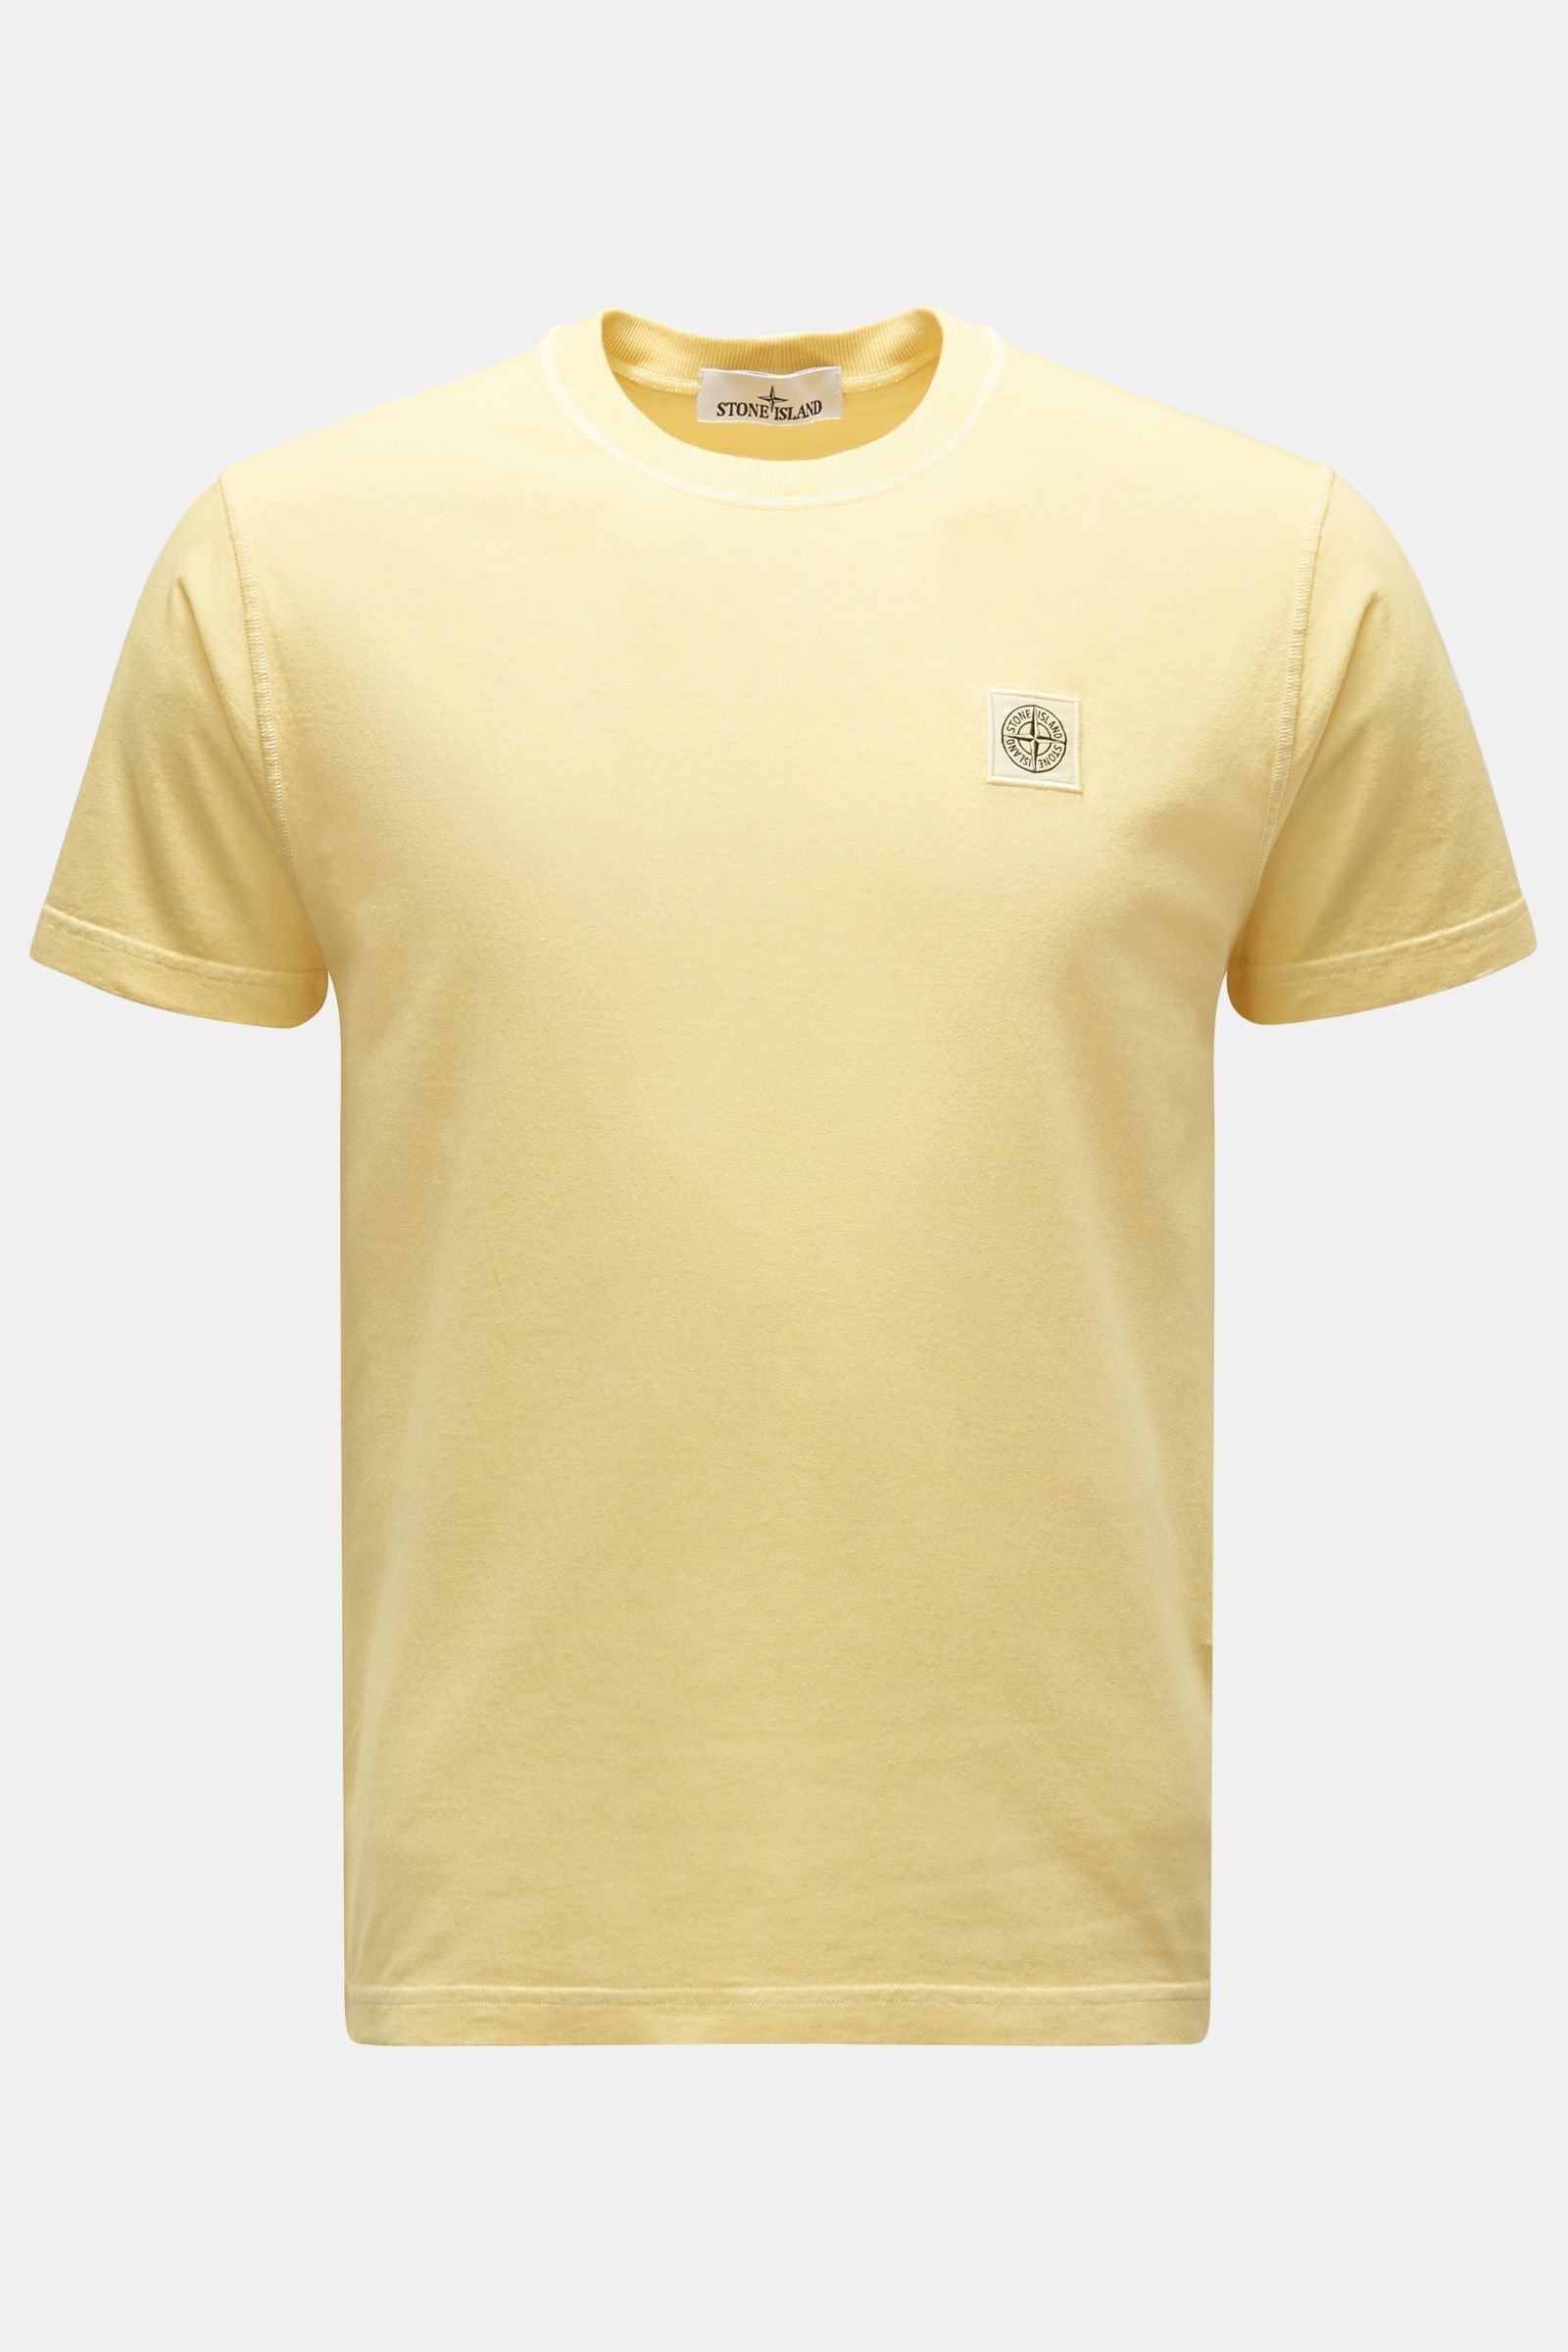 Crew neck T-shirt yellow